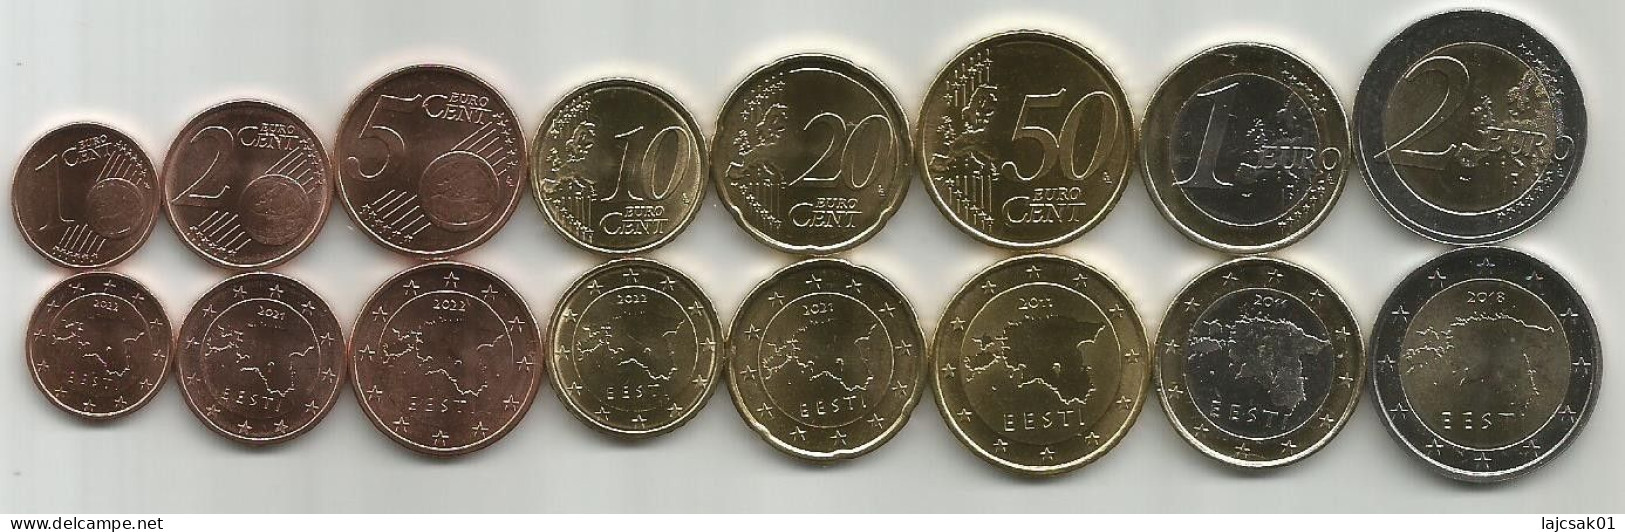 Estonia 2011 - 2022. High Grade Coin Set - Estonia